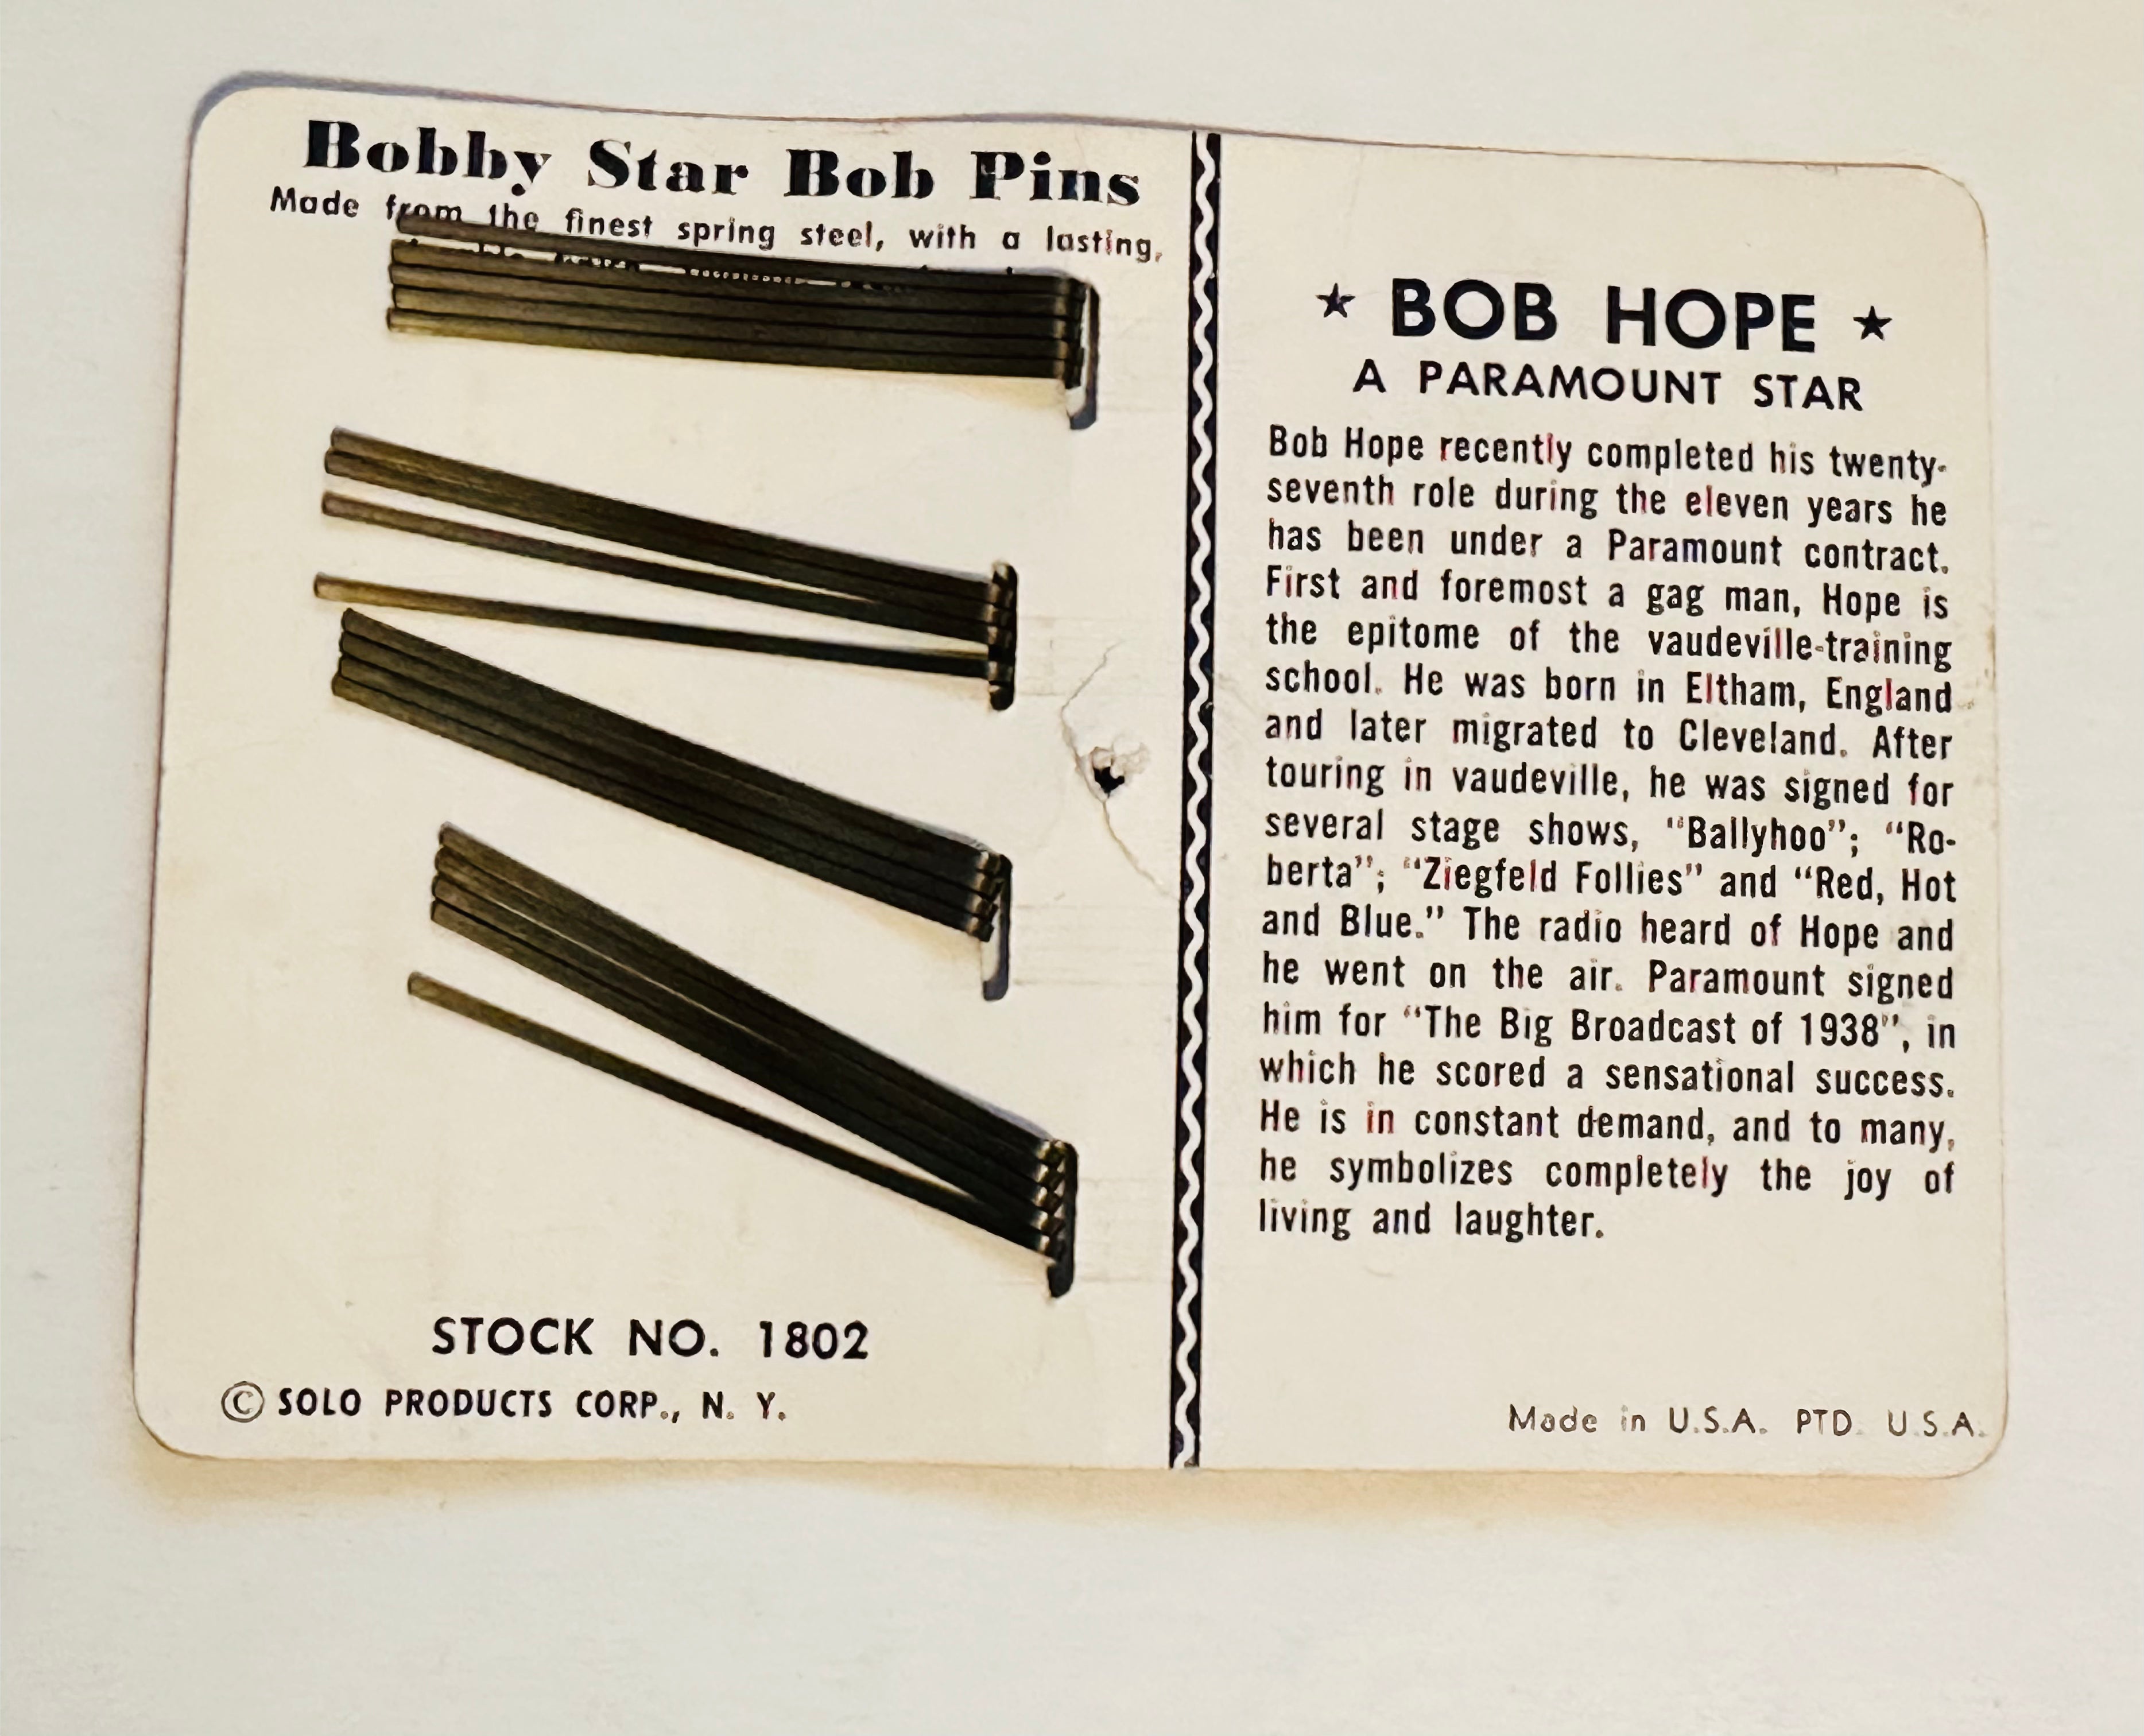 Bob Hope rare Bobby pins display cardboard ad 1950s